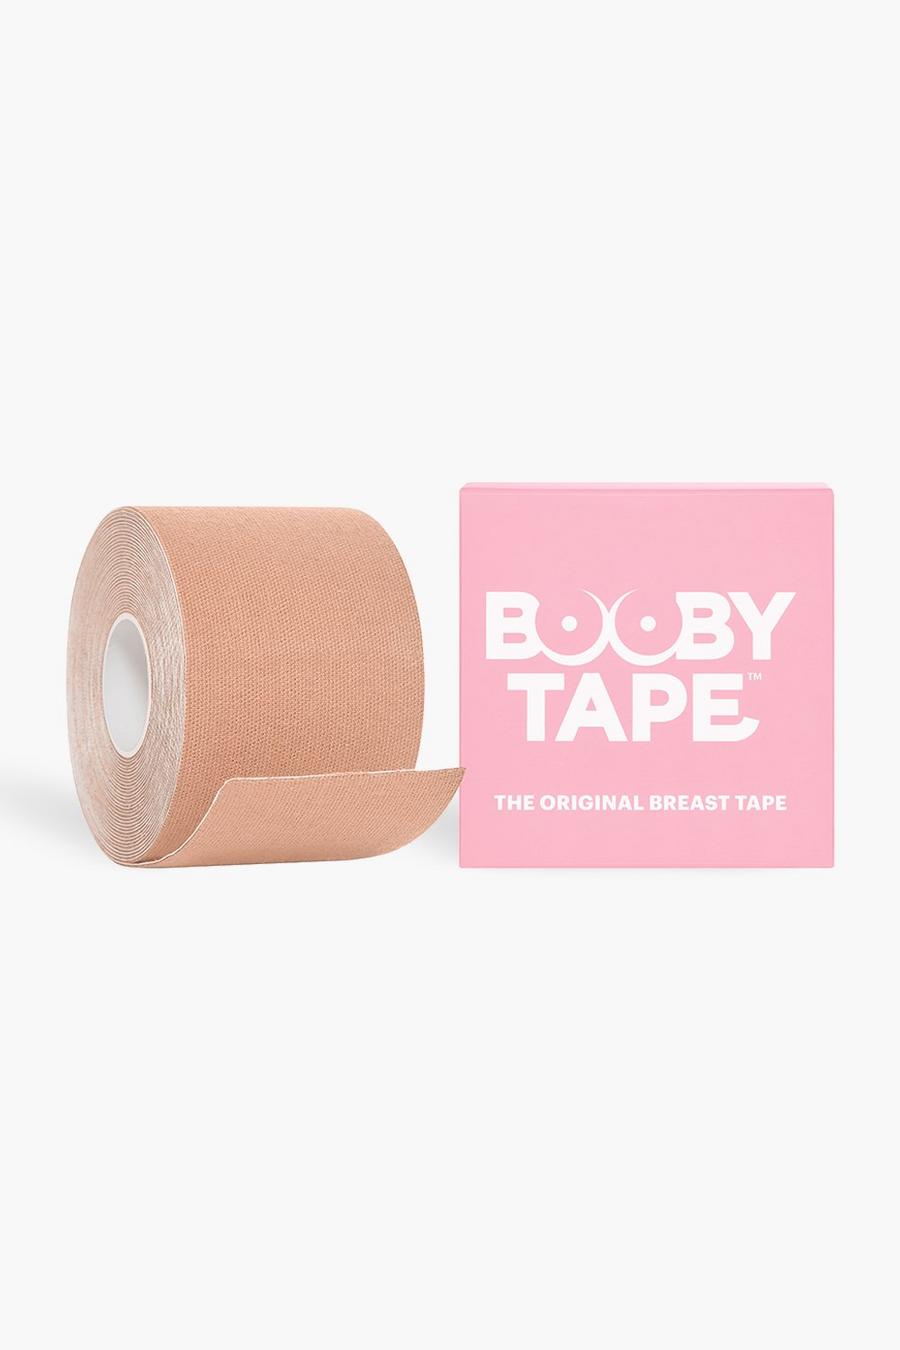 Booby Tape - Nastro sostitutivo reggiseno color carne - 5 m